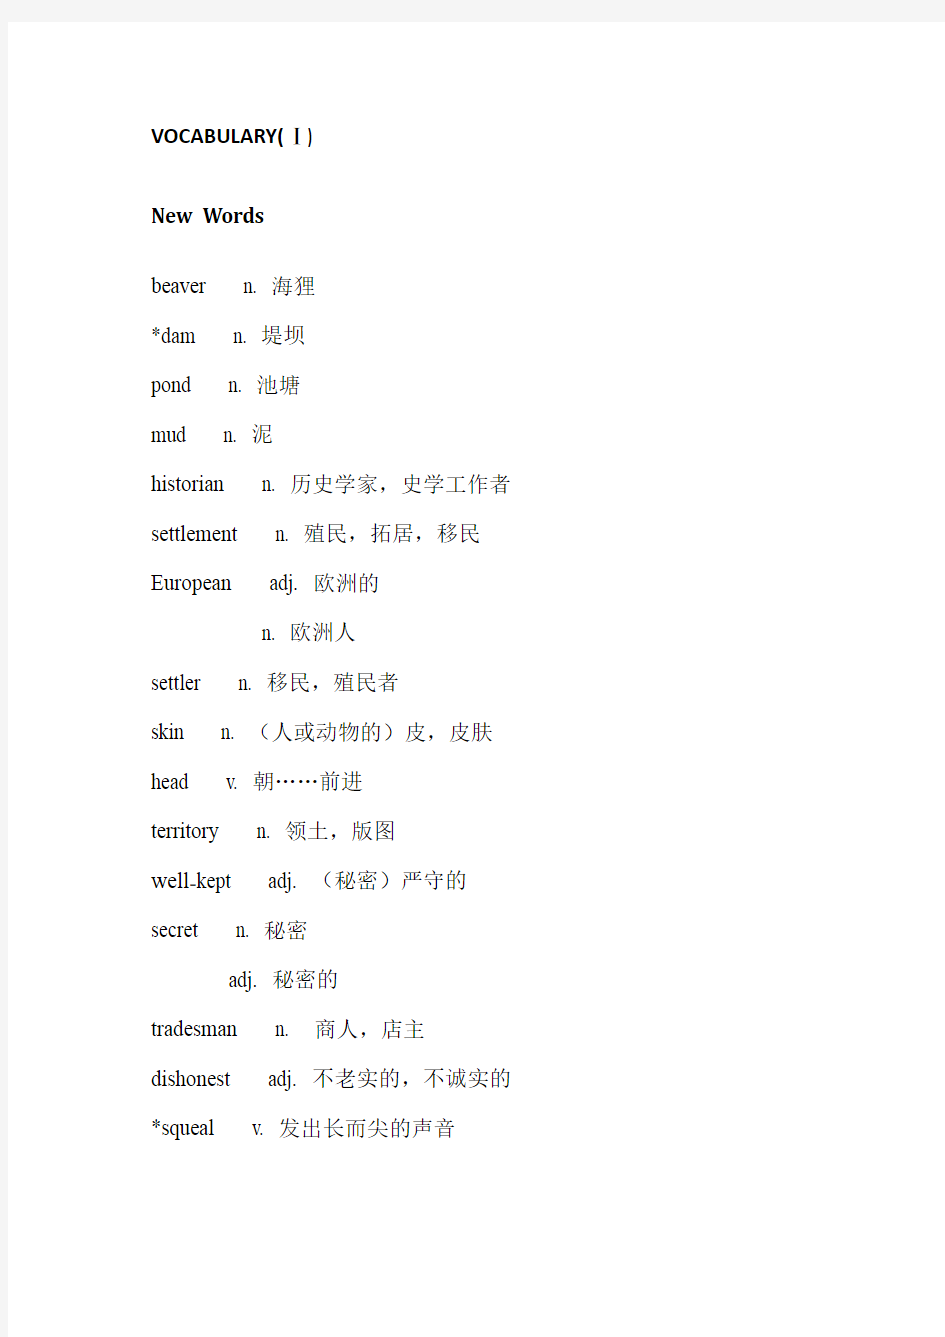 上海新世纪教材高中二年级第二学期单元词汇